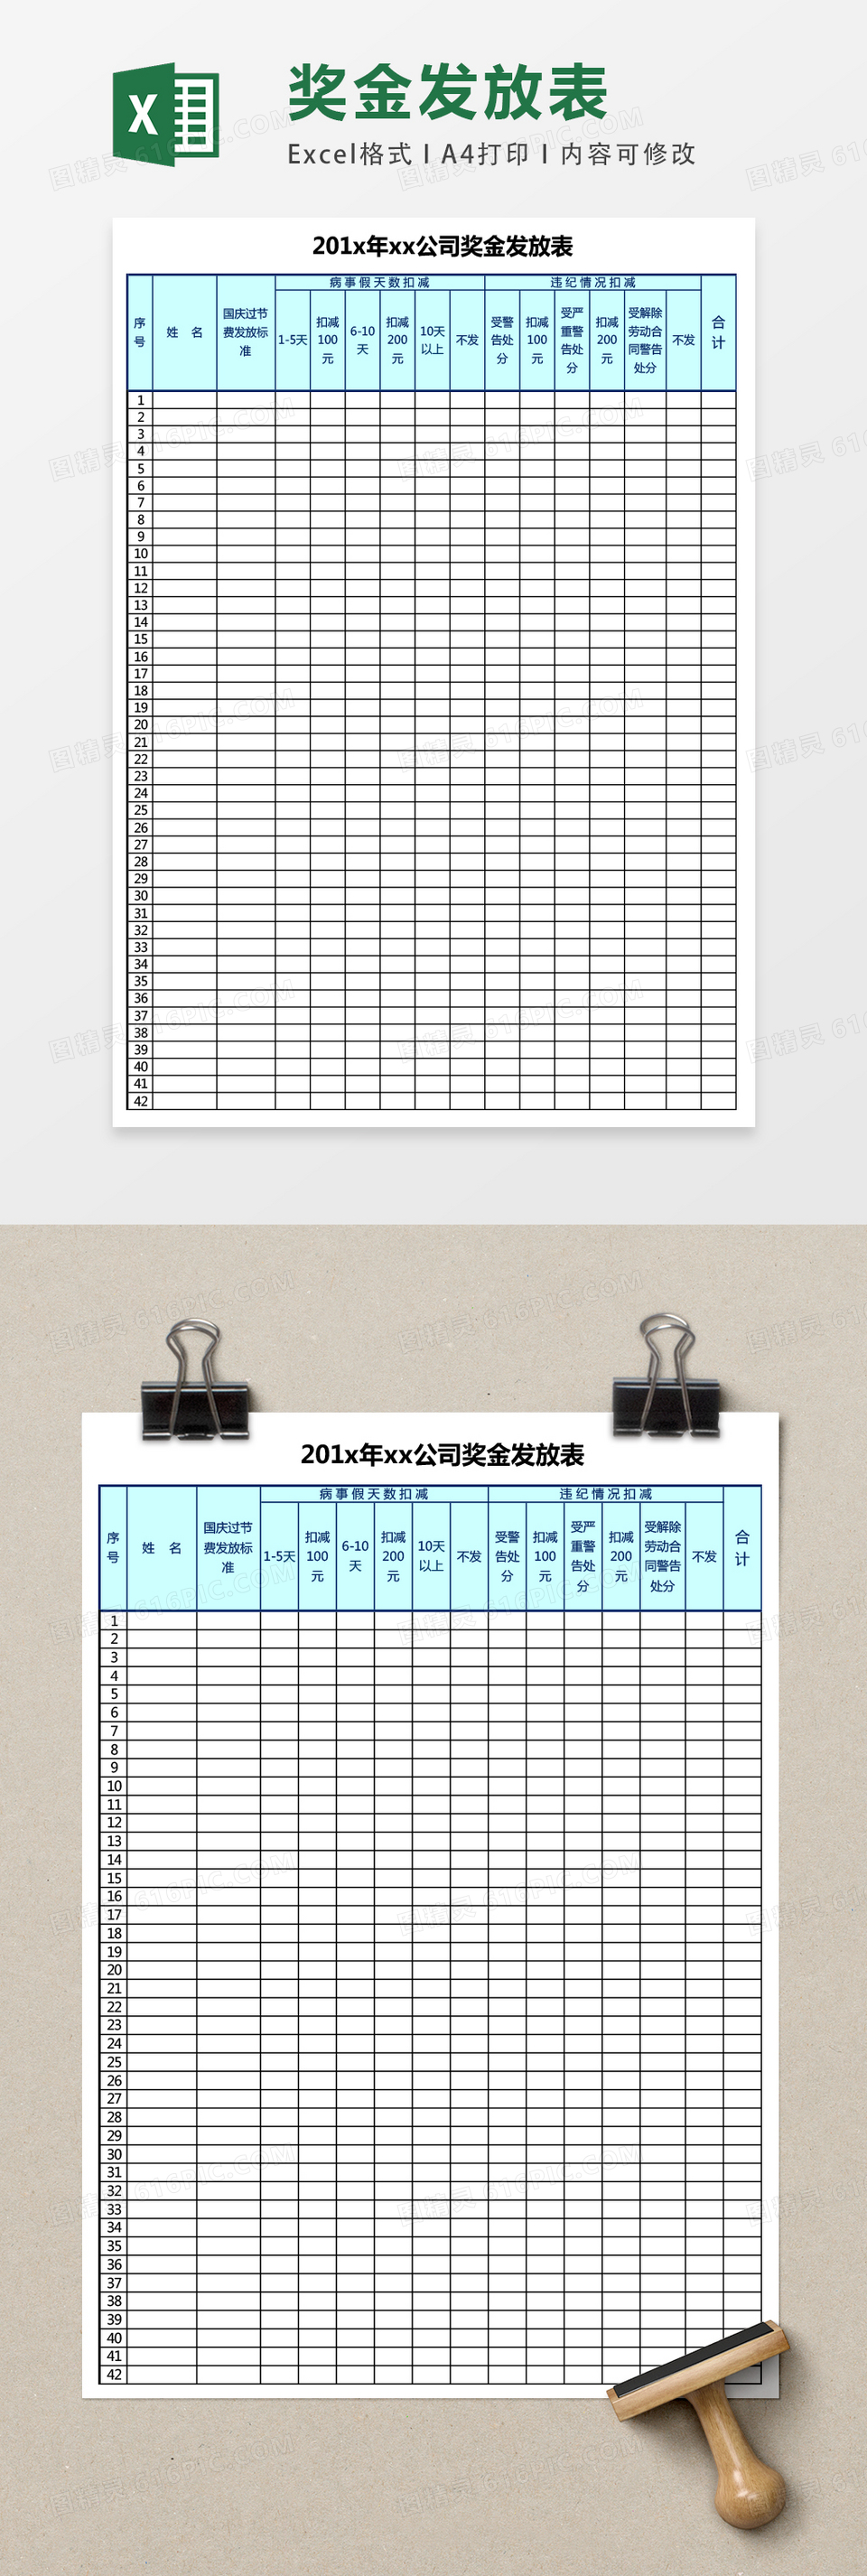 自动打印奖金发放统计表excel表格模板